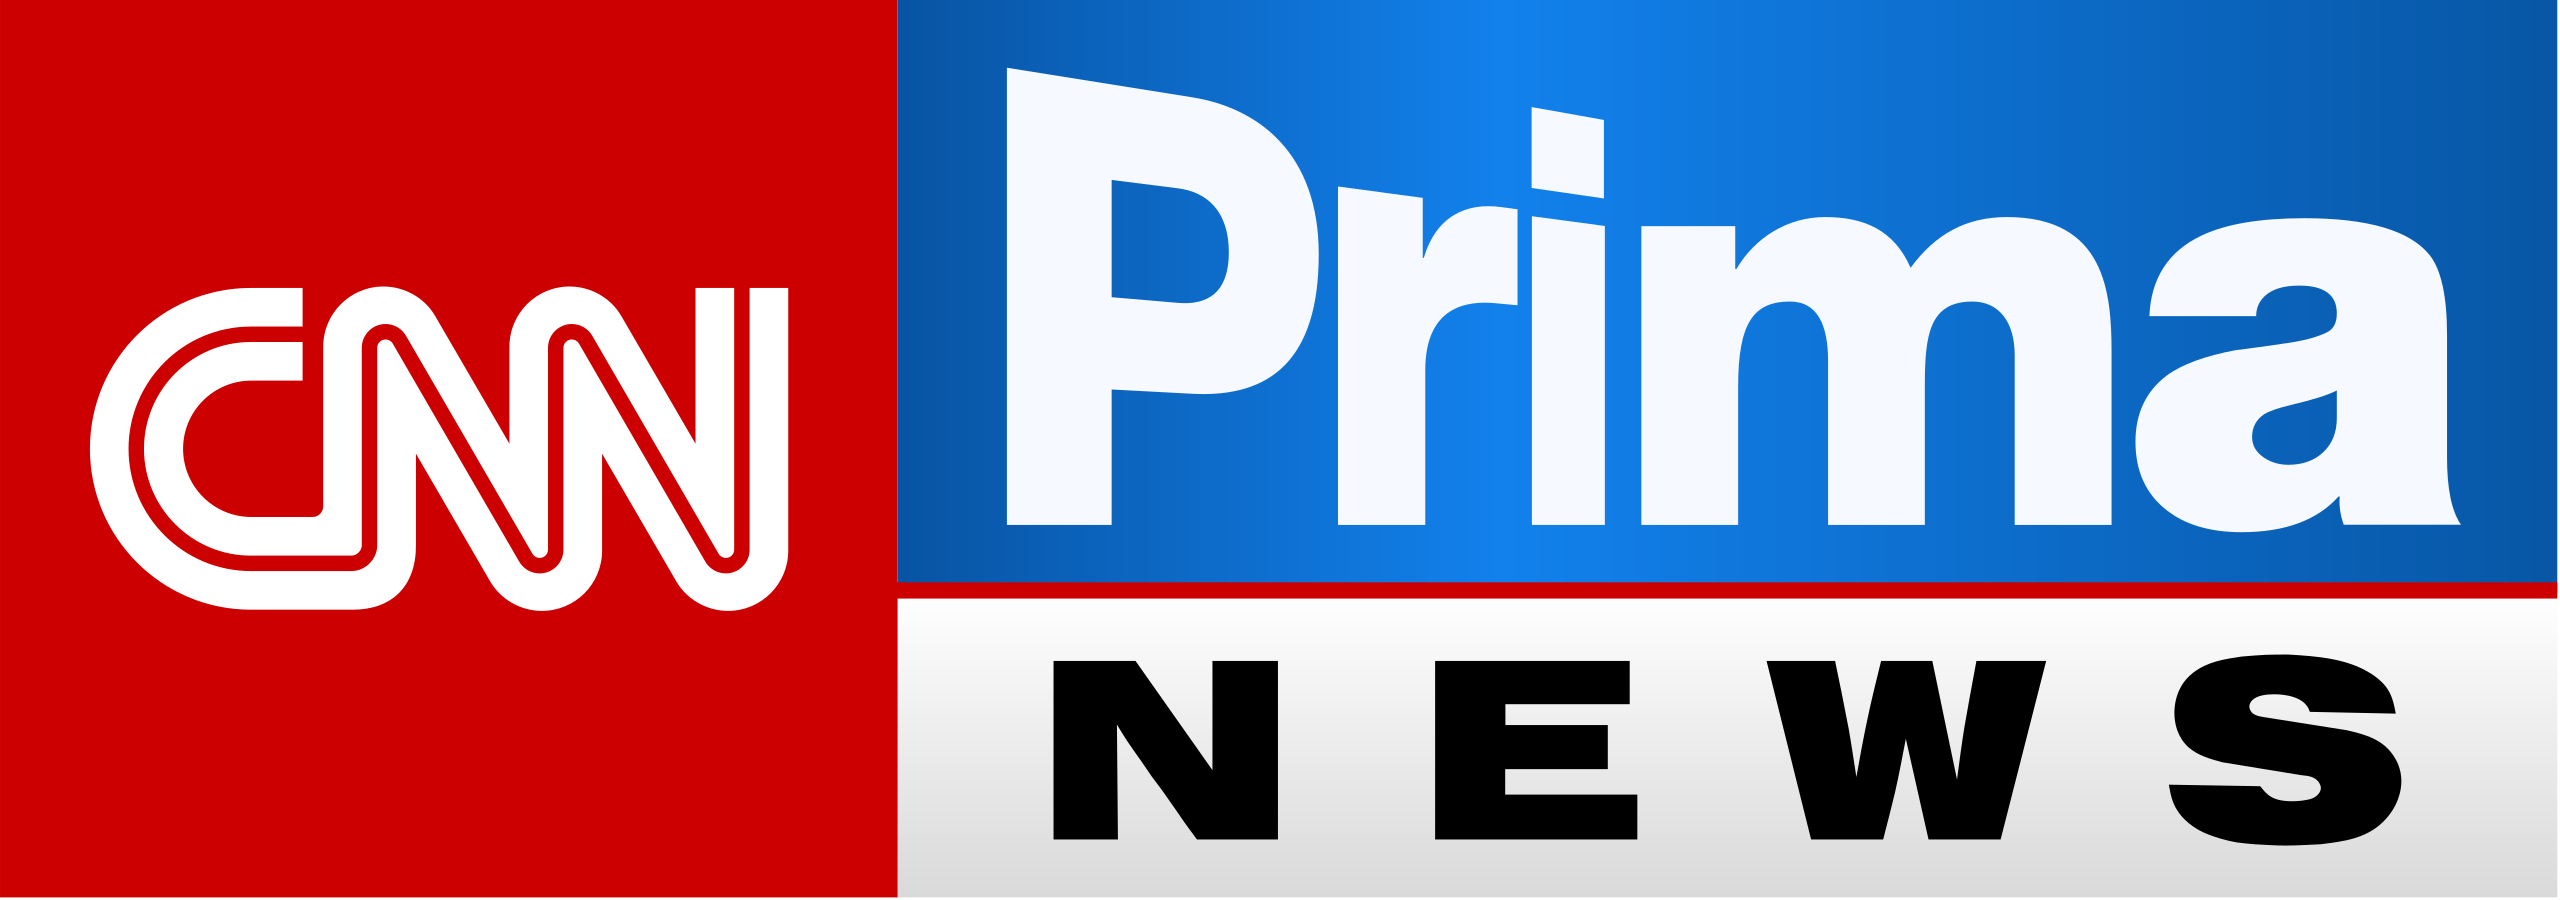 CNN_Prima_News_SVG_Logo.svg